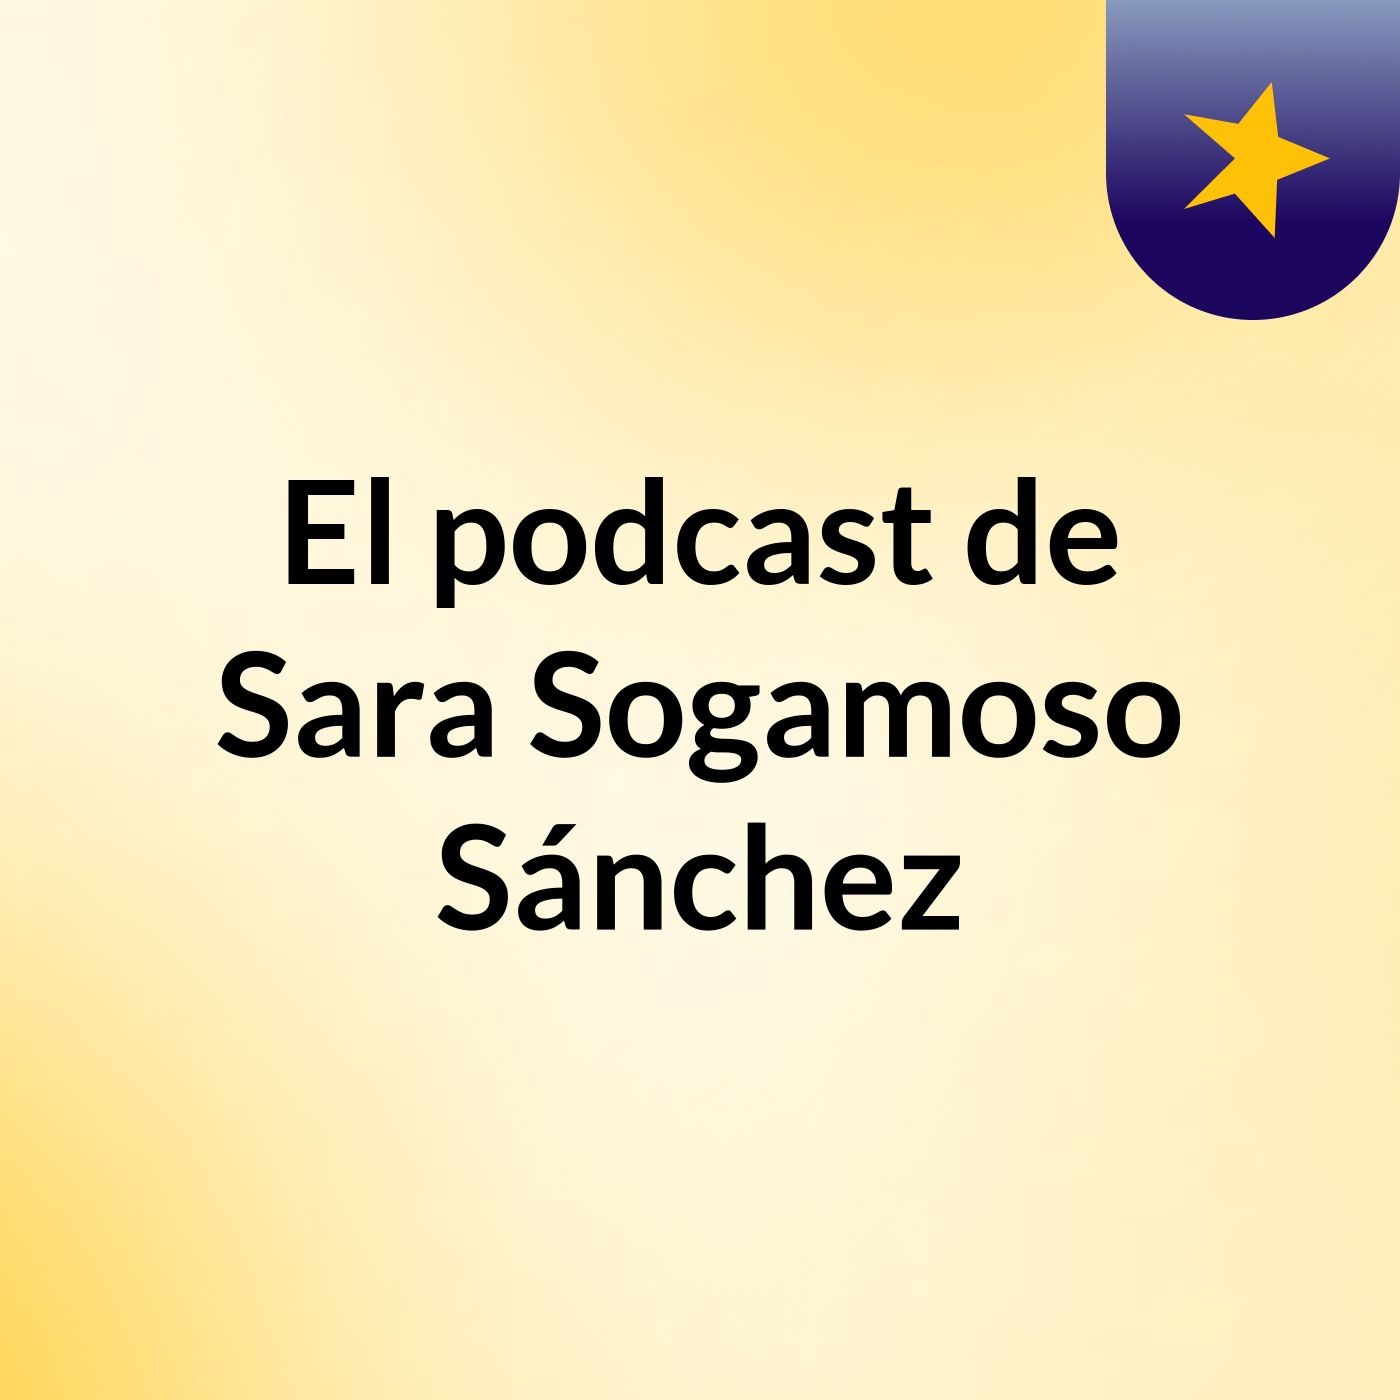 El podcast de Sara Sogamoso Sánchez